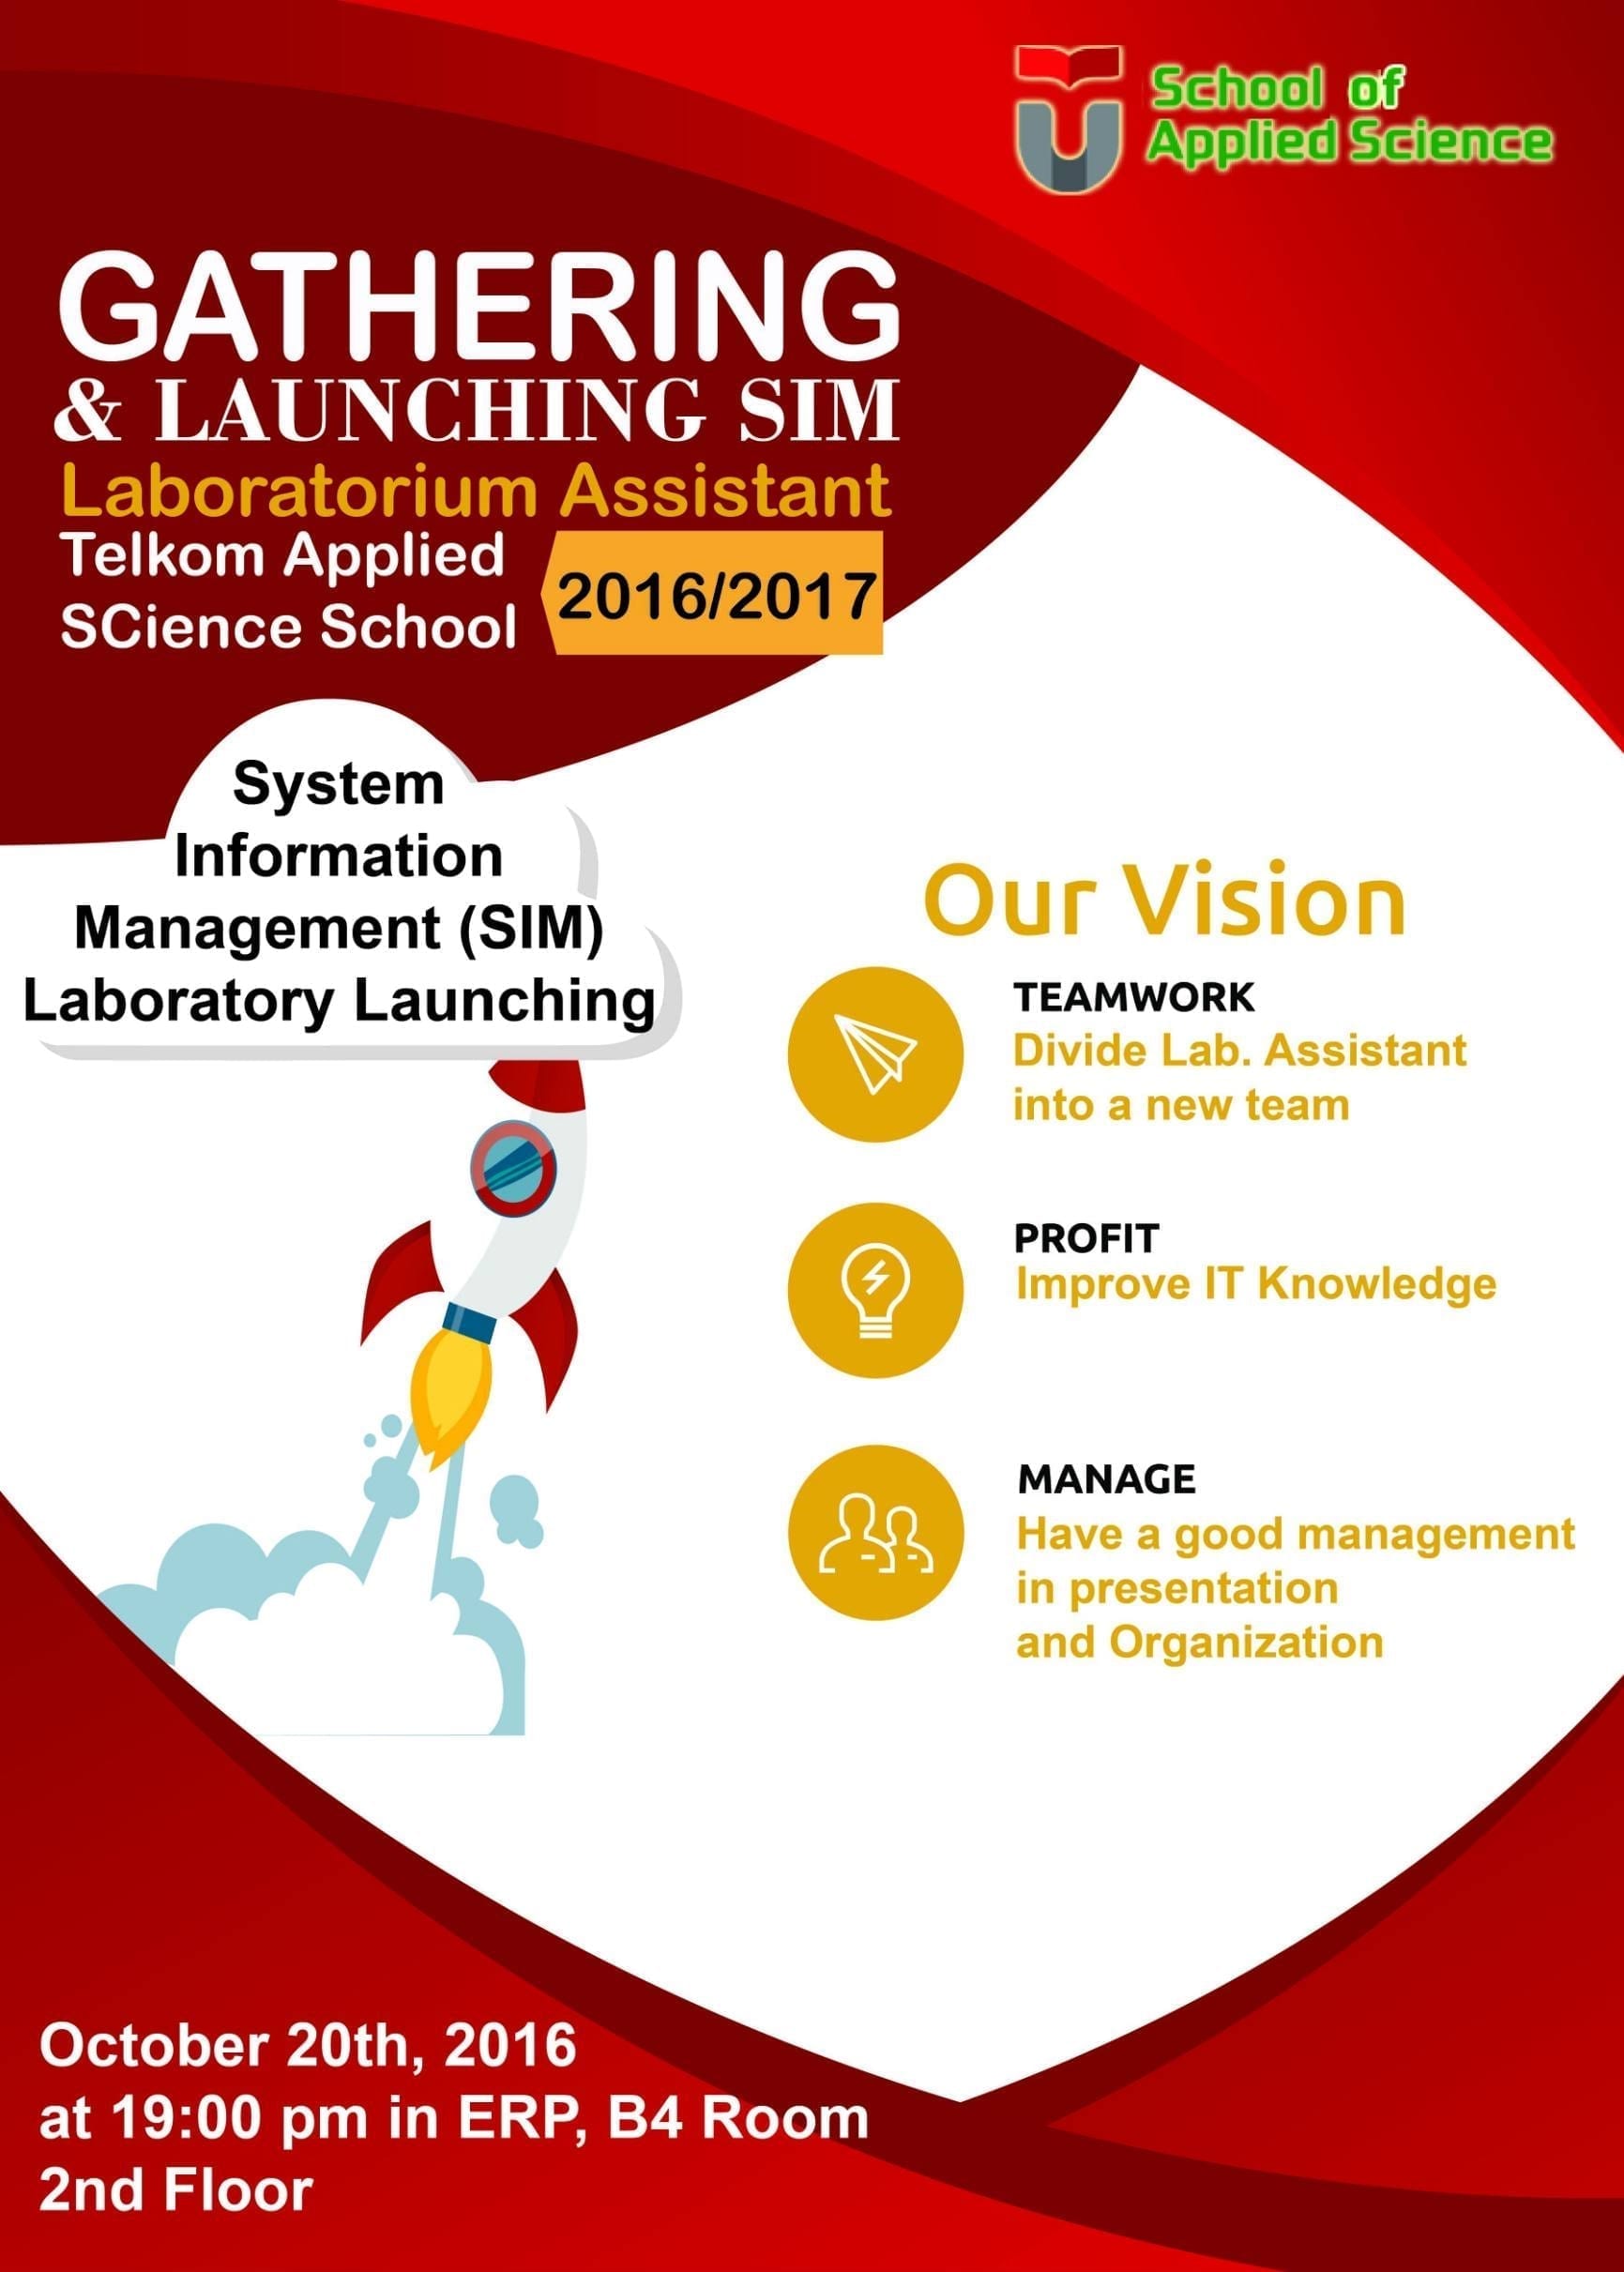 Gathering & Launching SIM Laboratory